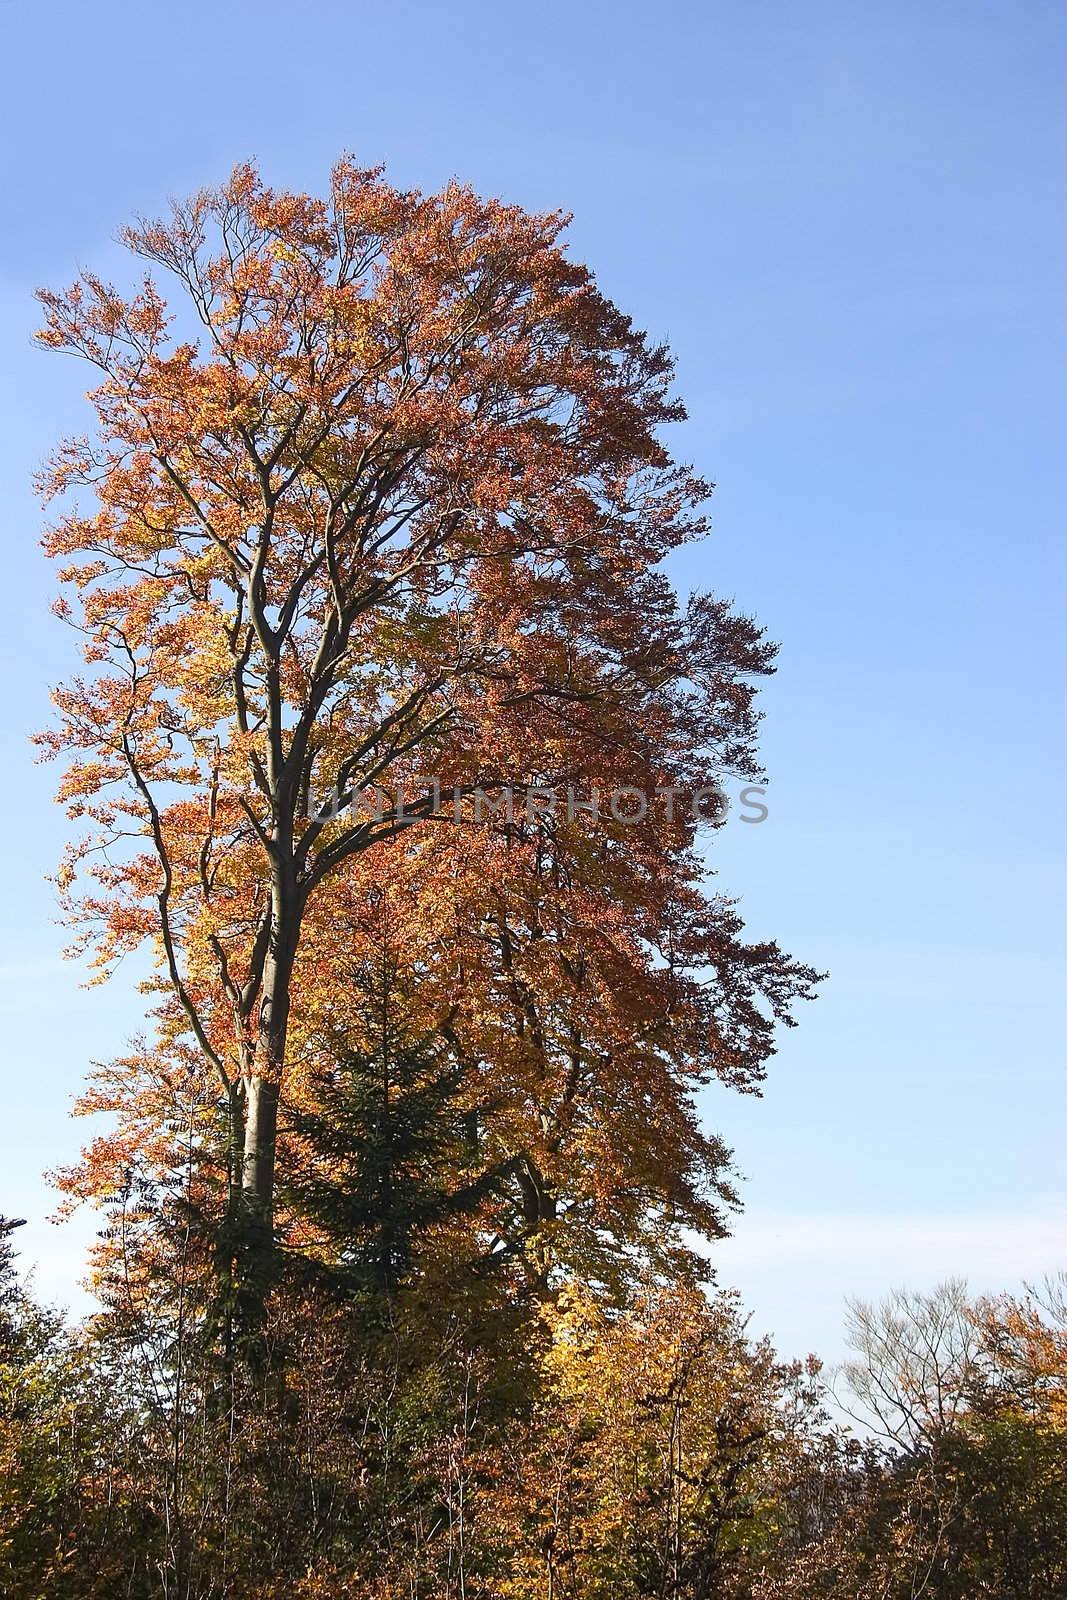 autumn trees by miradrozdowski